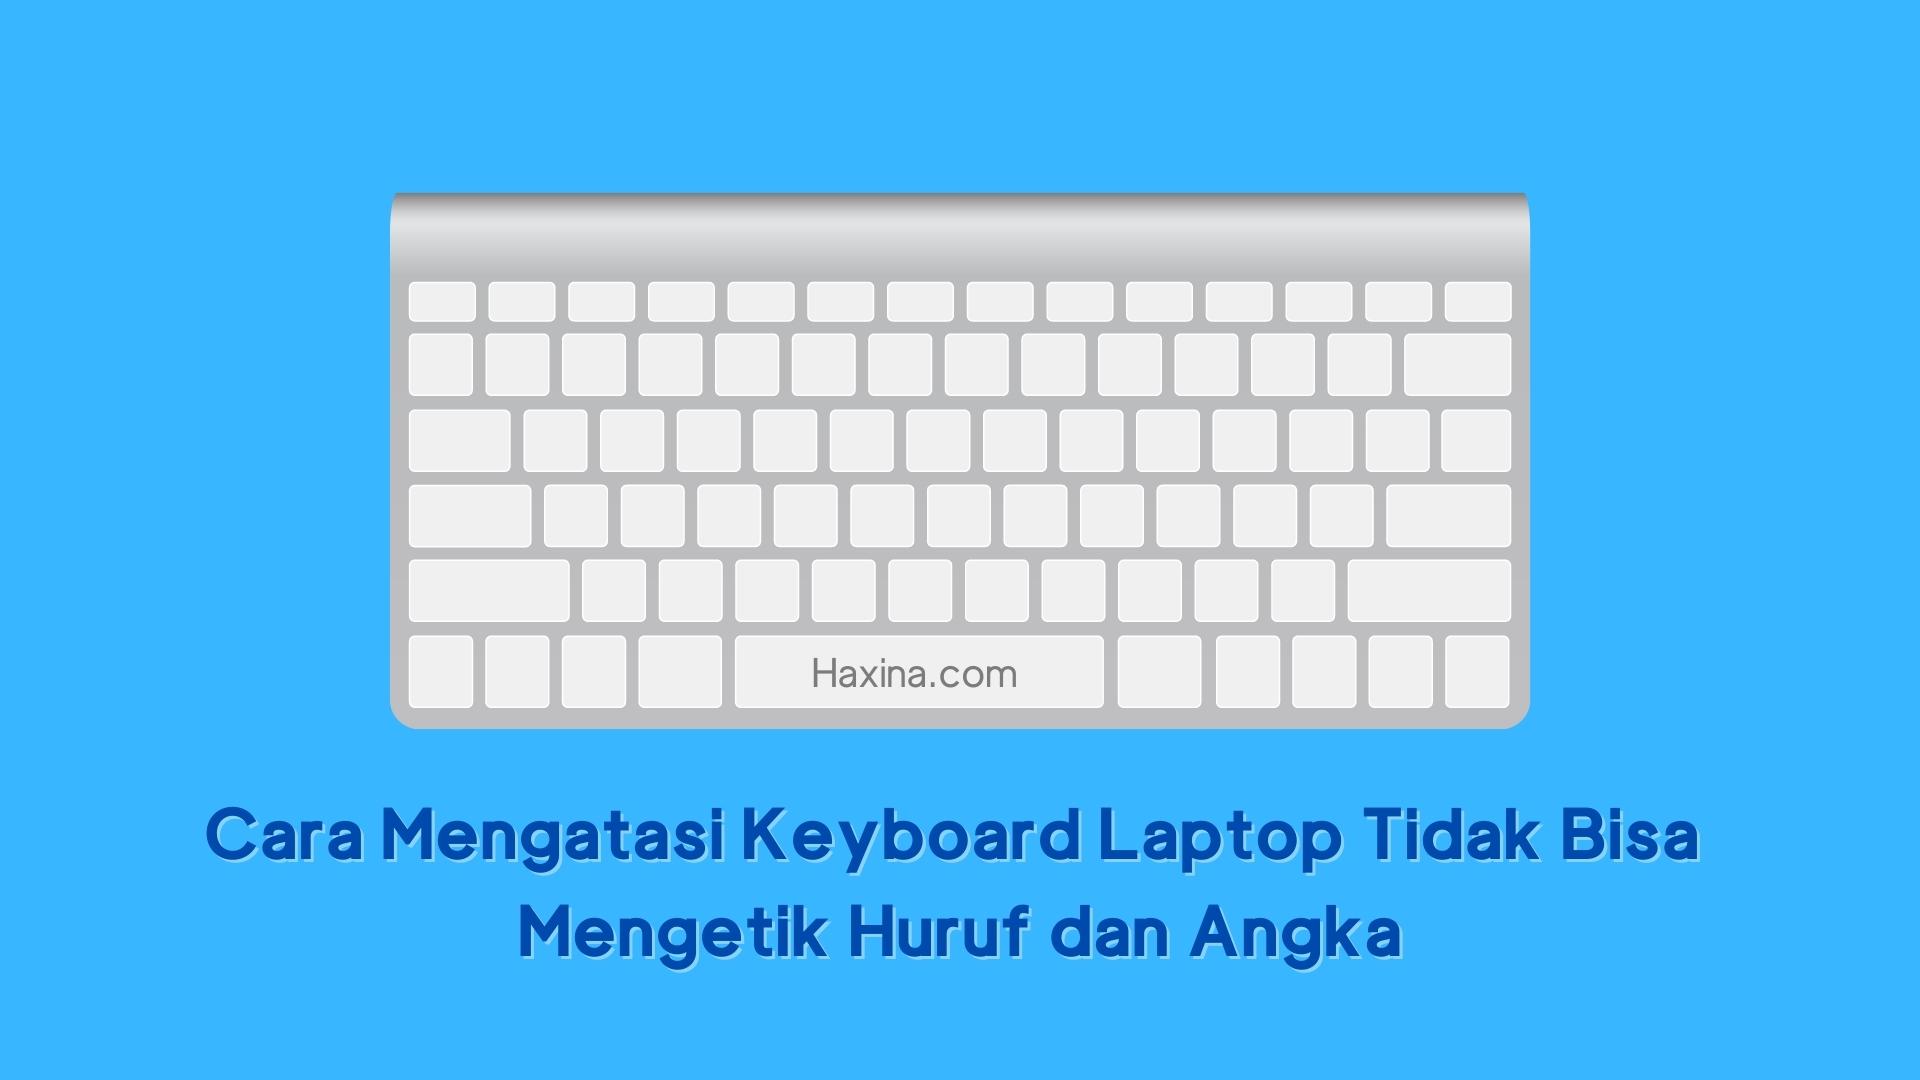 Cara Mengatasi Keyboard Laptop Tidak Bisa Mengetik Huruf Dan Angka Haxina